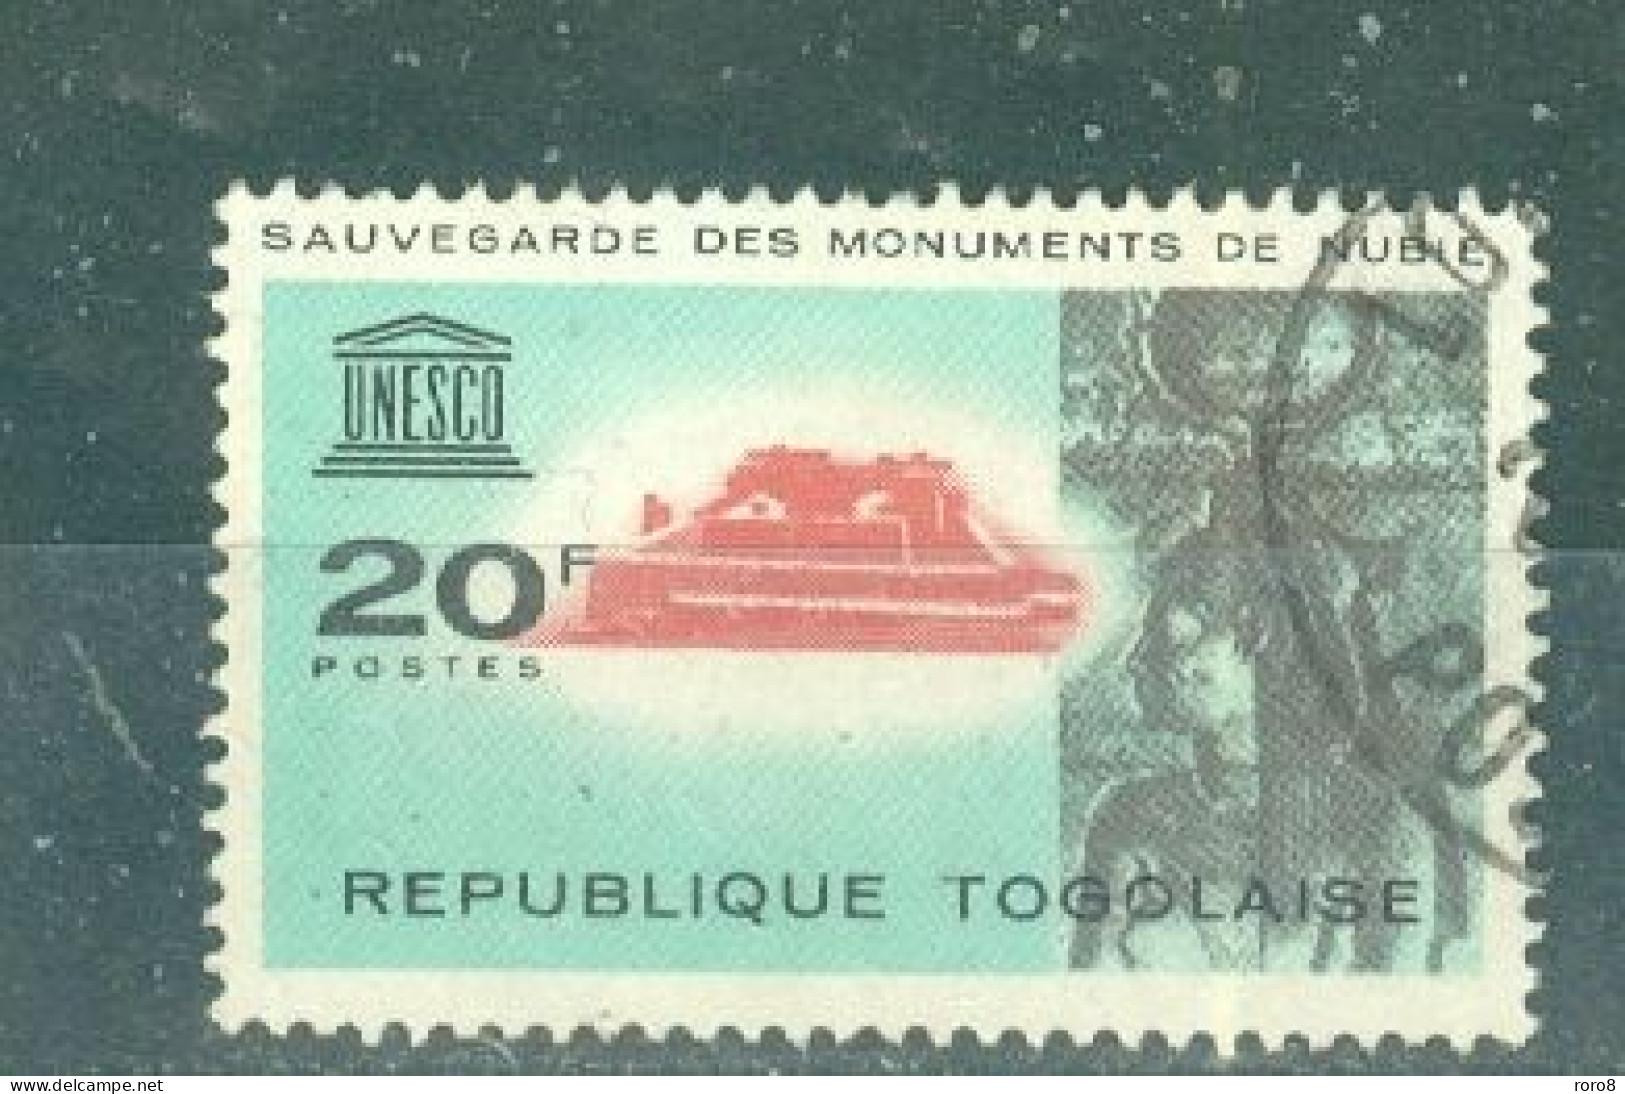 REPUBLIQUE DU TOGO - N°409.Oblitéré Sauvegarde Des Mpnuments De Nubie.Emblème De L'U.N.E.S.C.O. Sujets Divers. - UNESCO